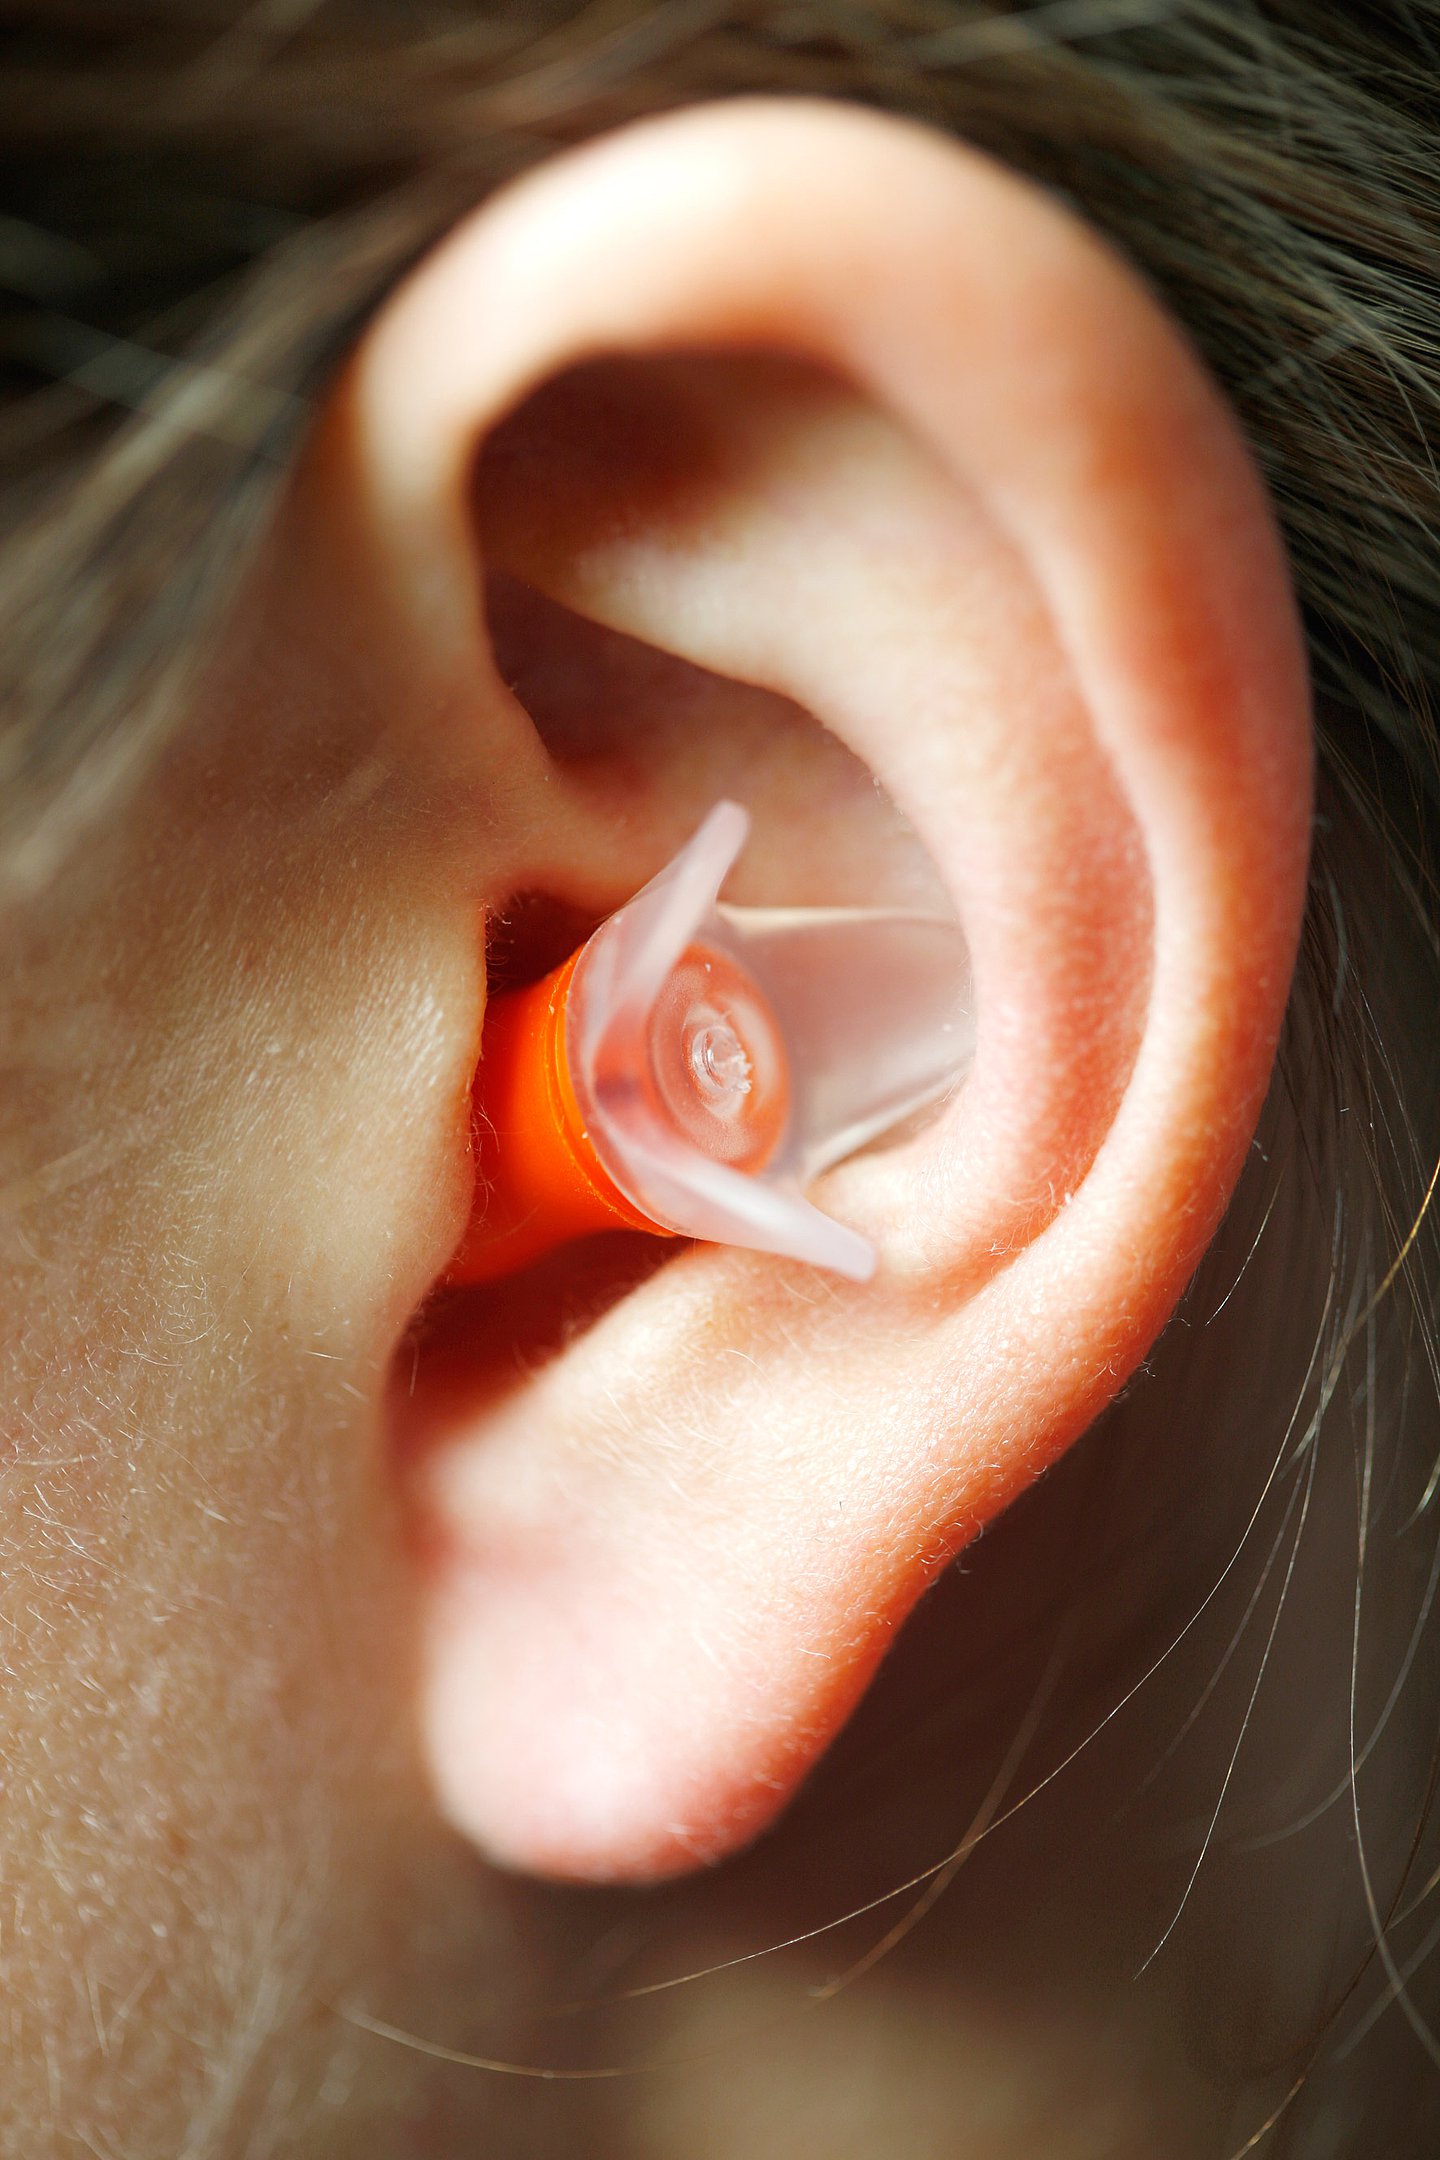 Foto: Eine Person trägt einen Ohrstöpsel.